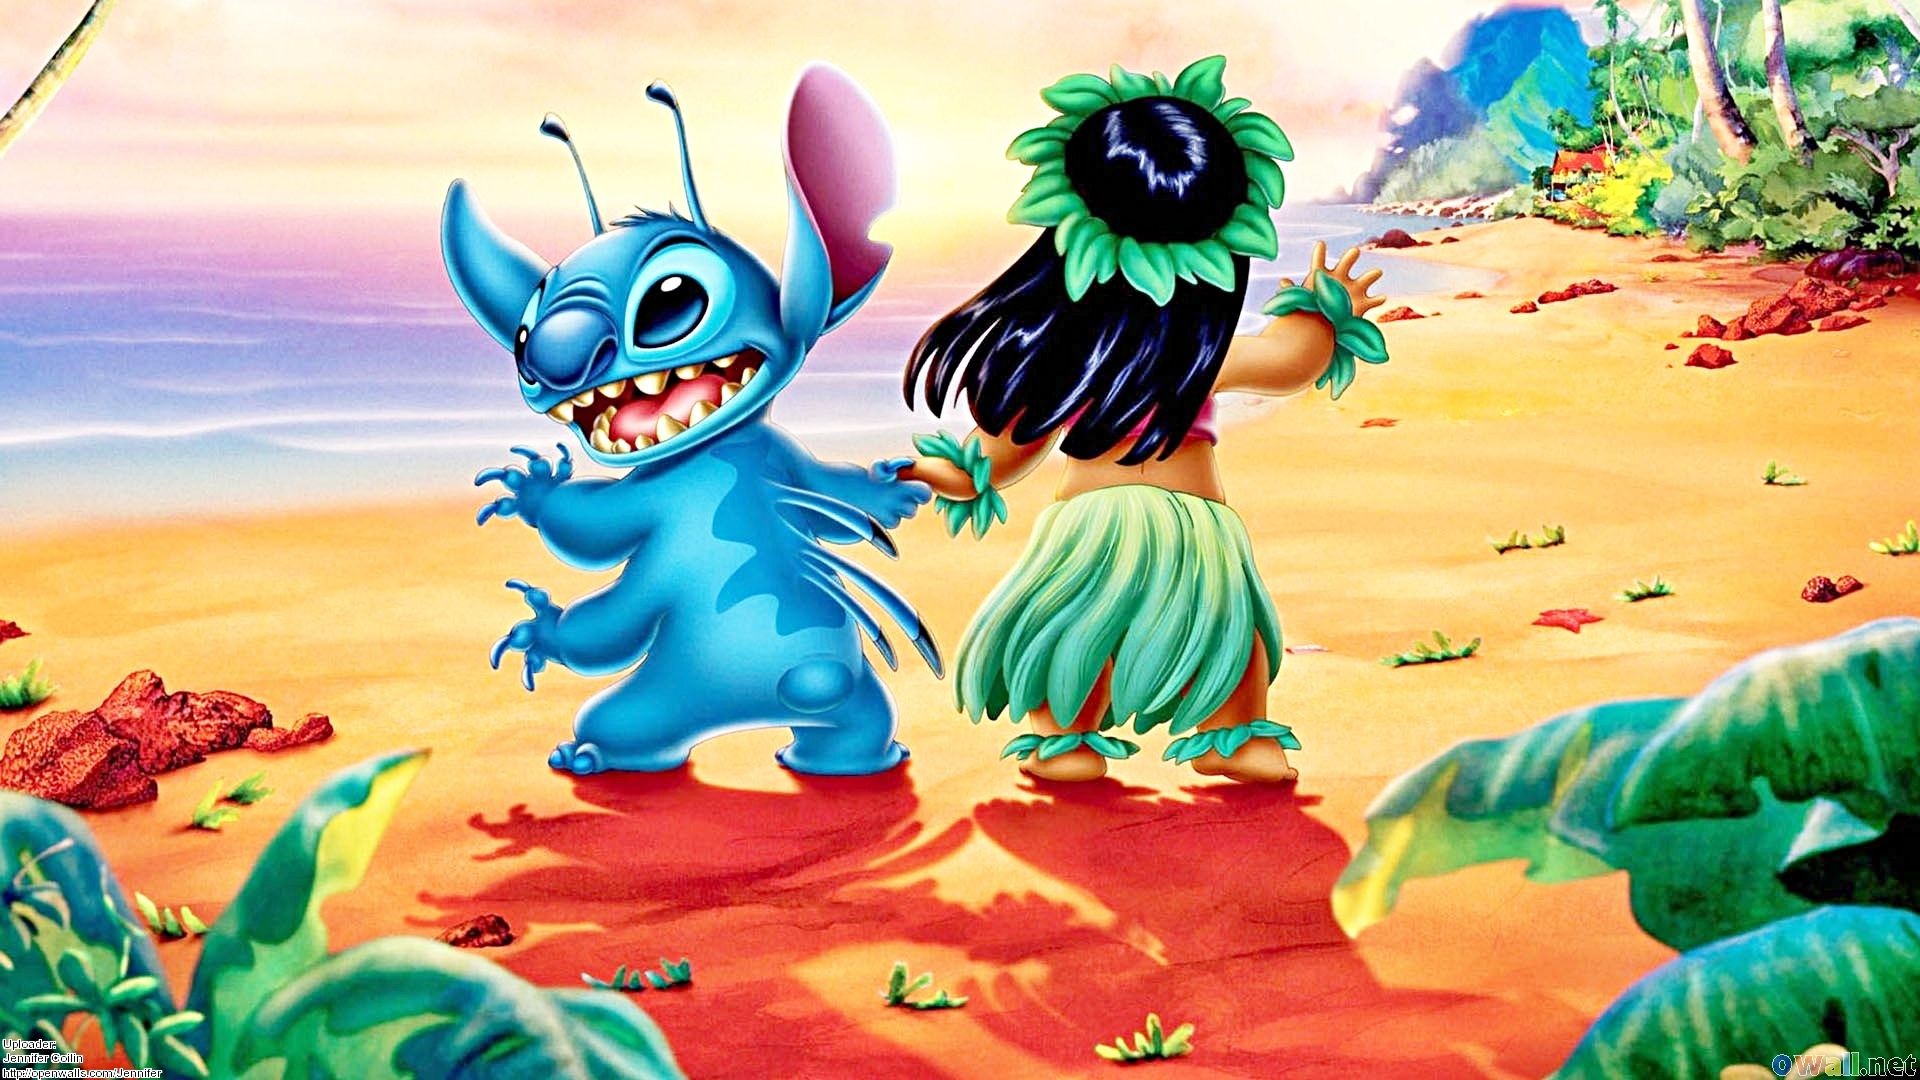 Một bức hình nền tuyệt đẹp của hai nhân vật Lilo và Stitch được yêu thích nhất từ Walt Disney! Bộ sưu tập này sẽ đưa bạn vào thế giới của Lilo và Stitch và tạo ra nhiều cảm xúc đầy màu sắc. Hãy tải về ngay để trải nghiệm cảm giác mới lạ nhất.